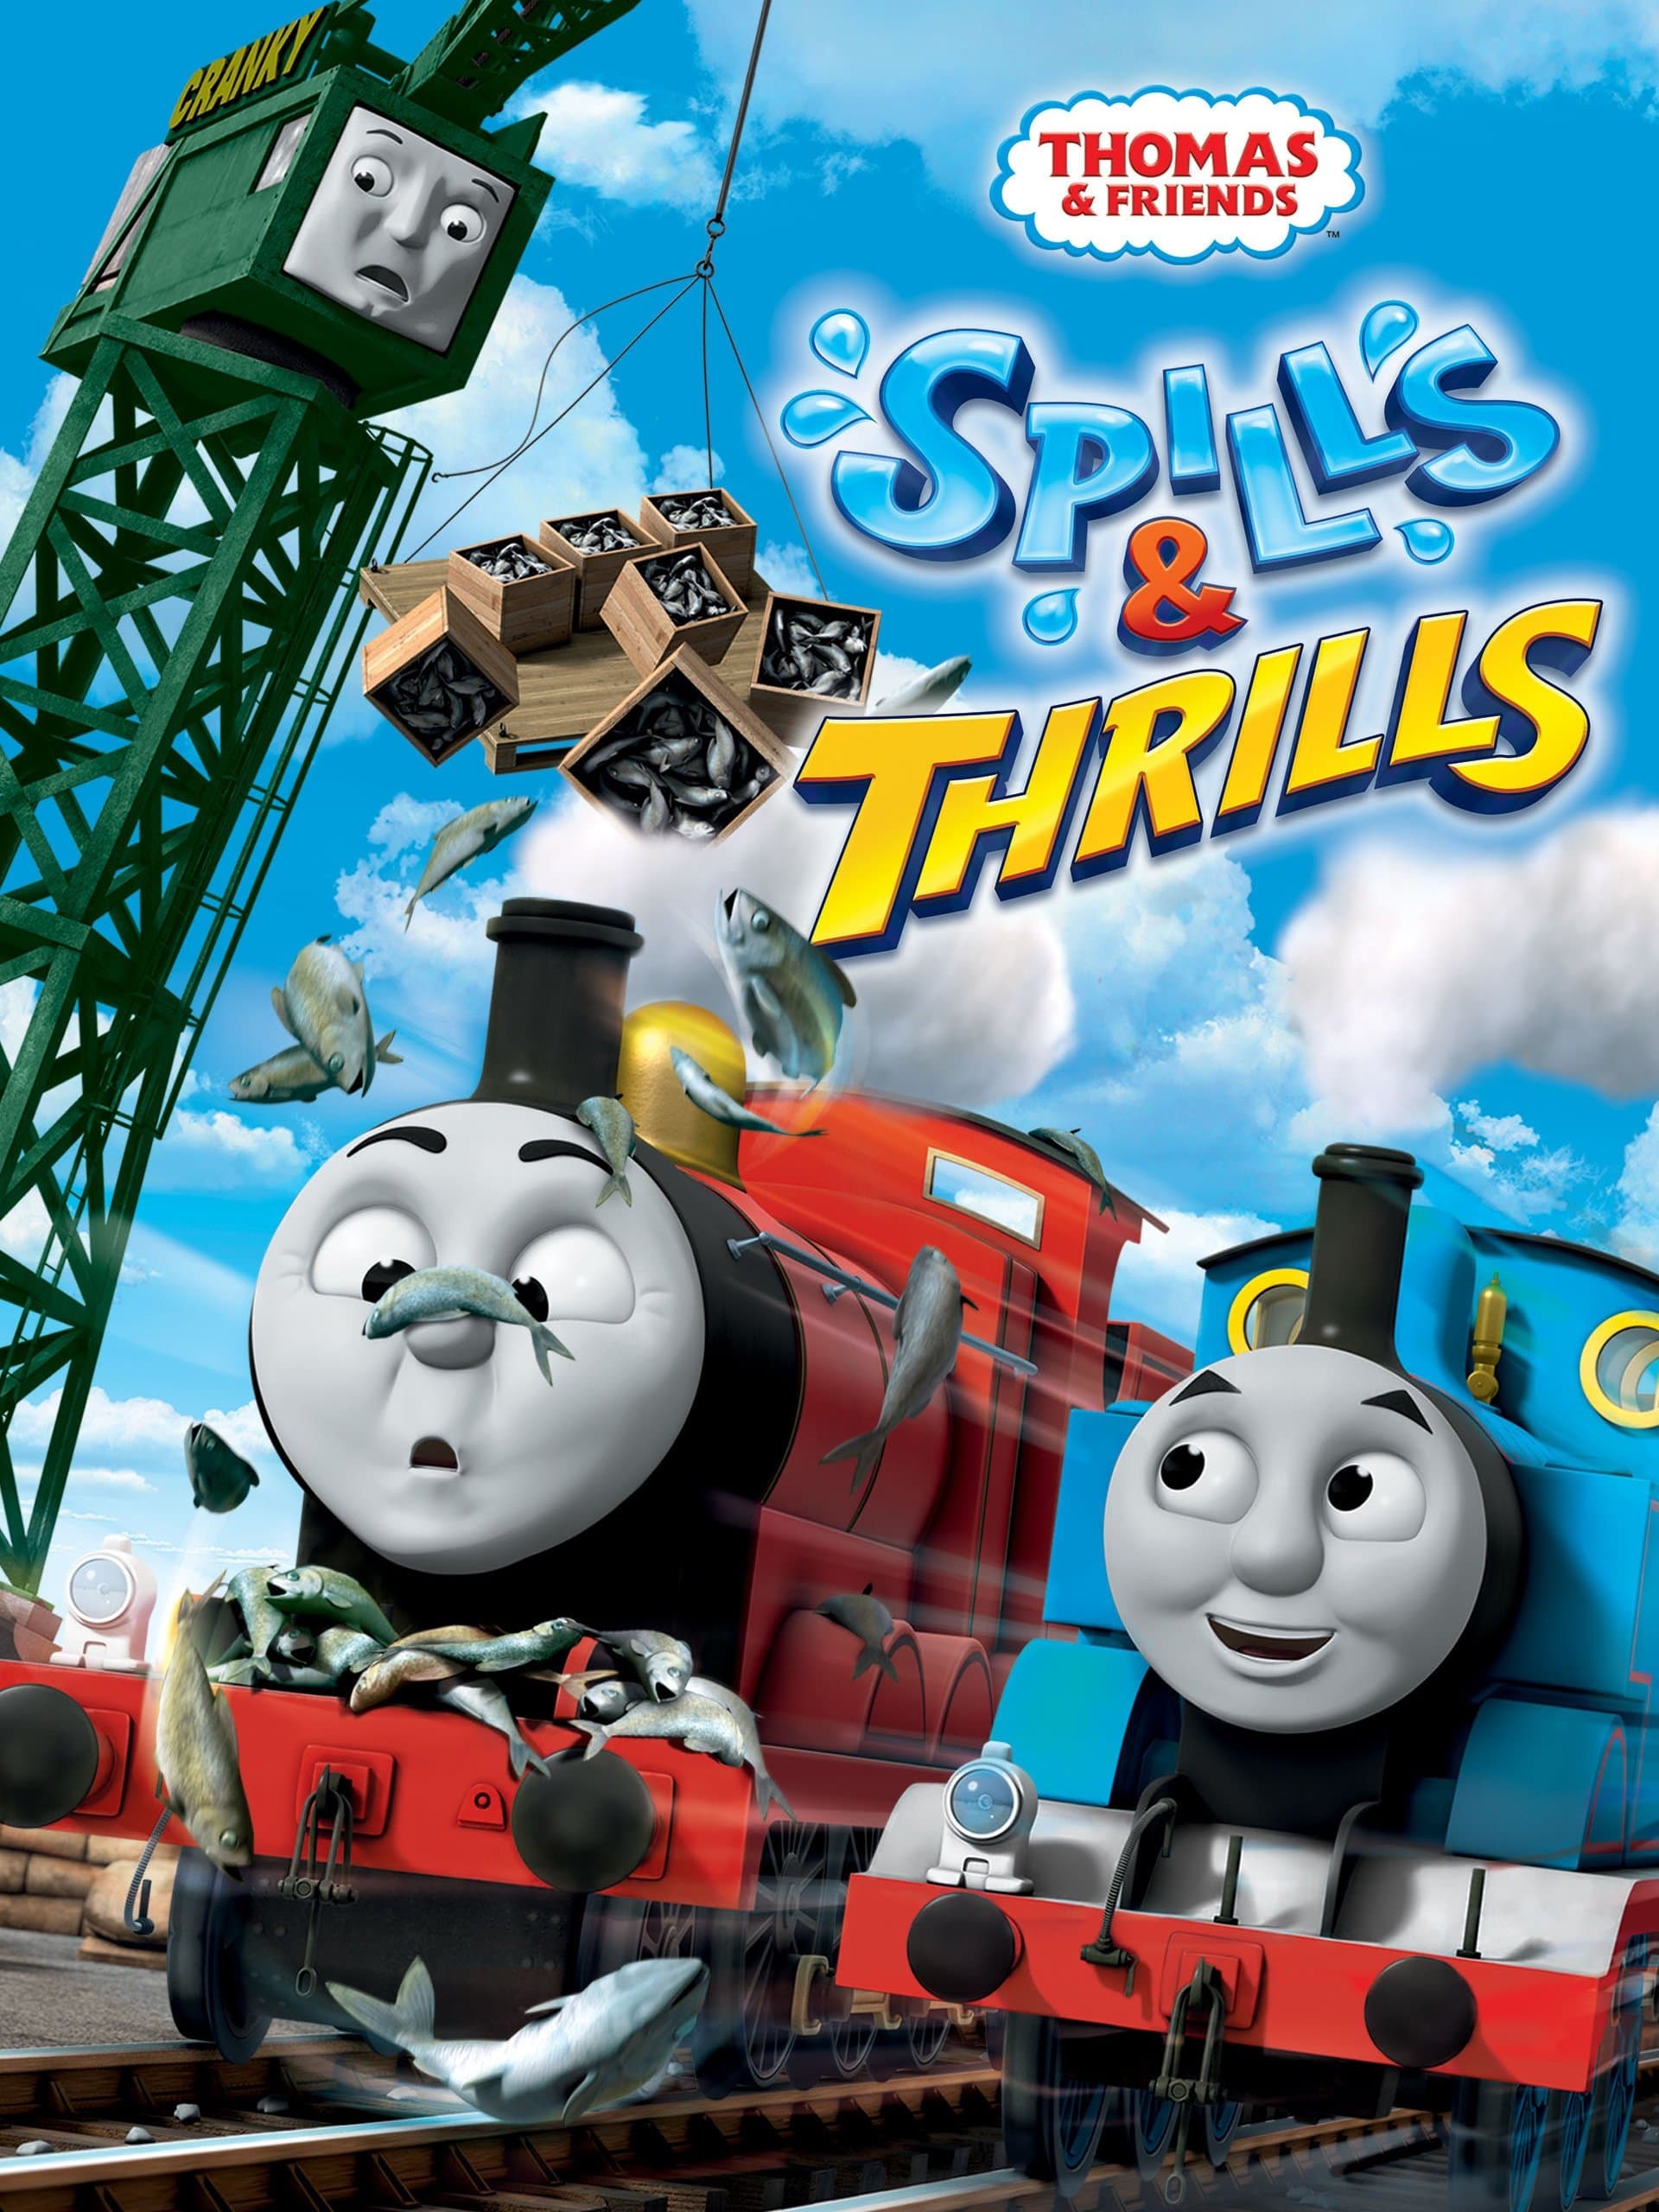 Thomas & Friends: Spills & Thrills film